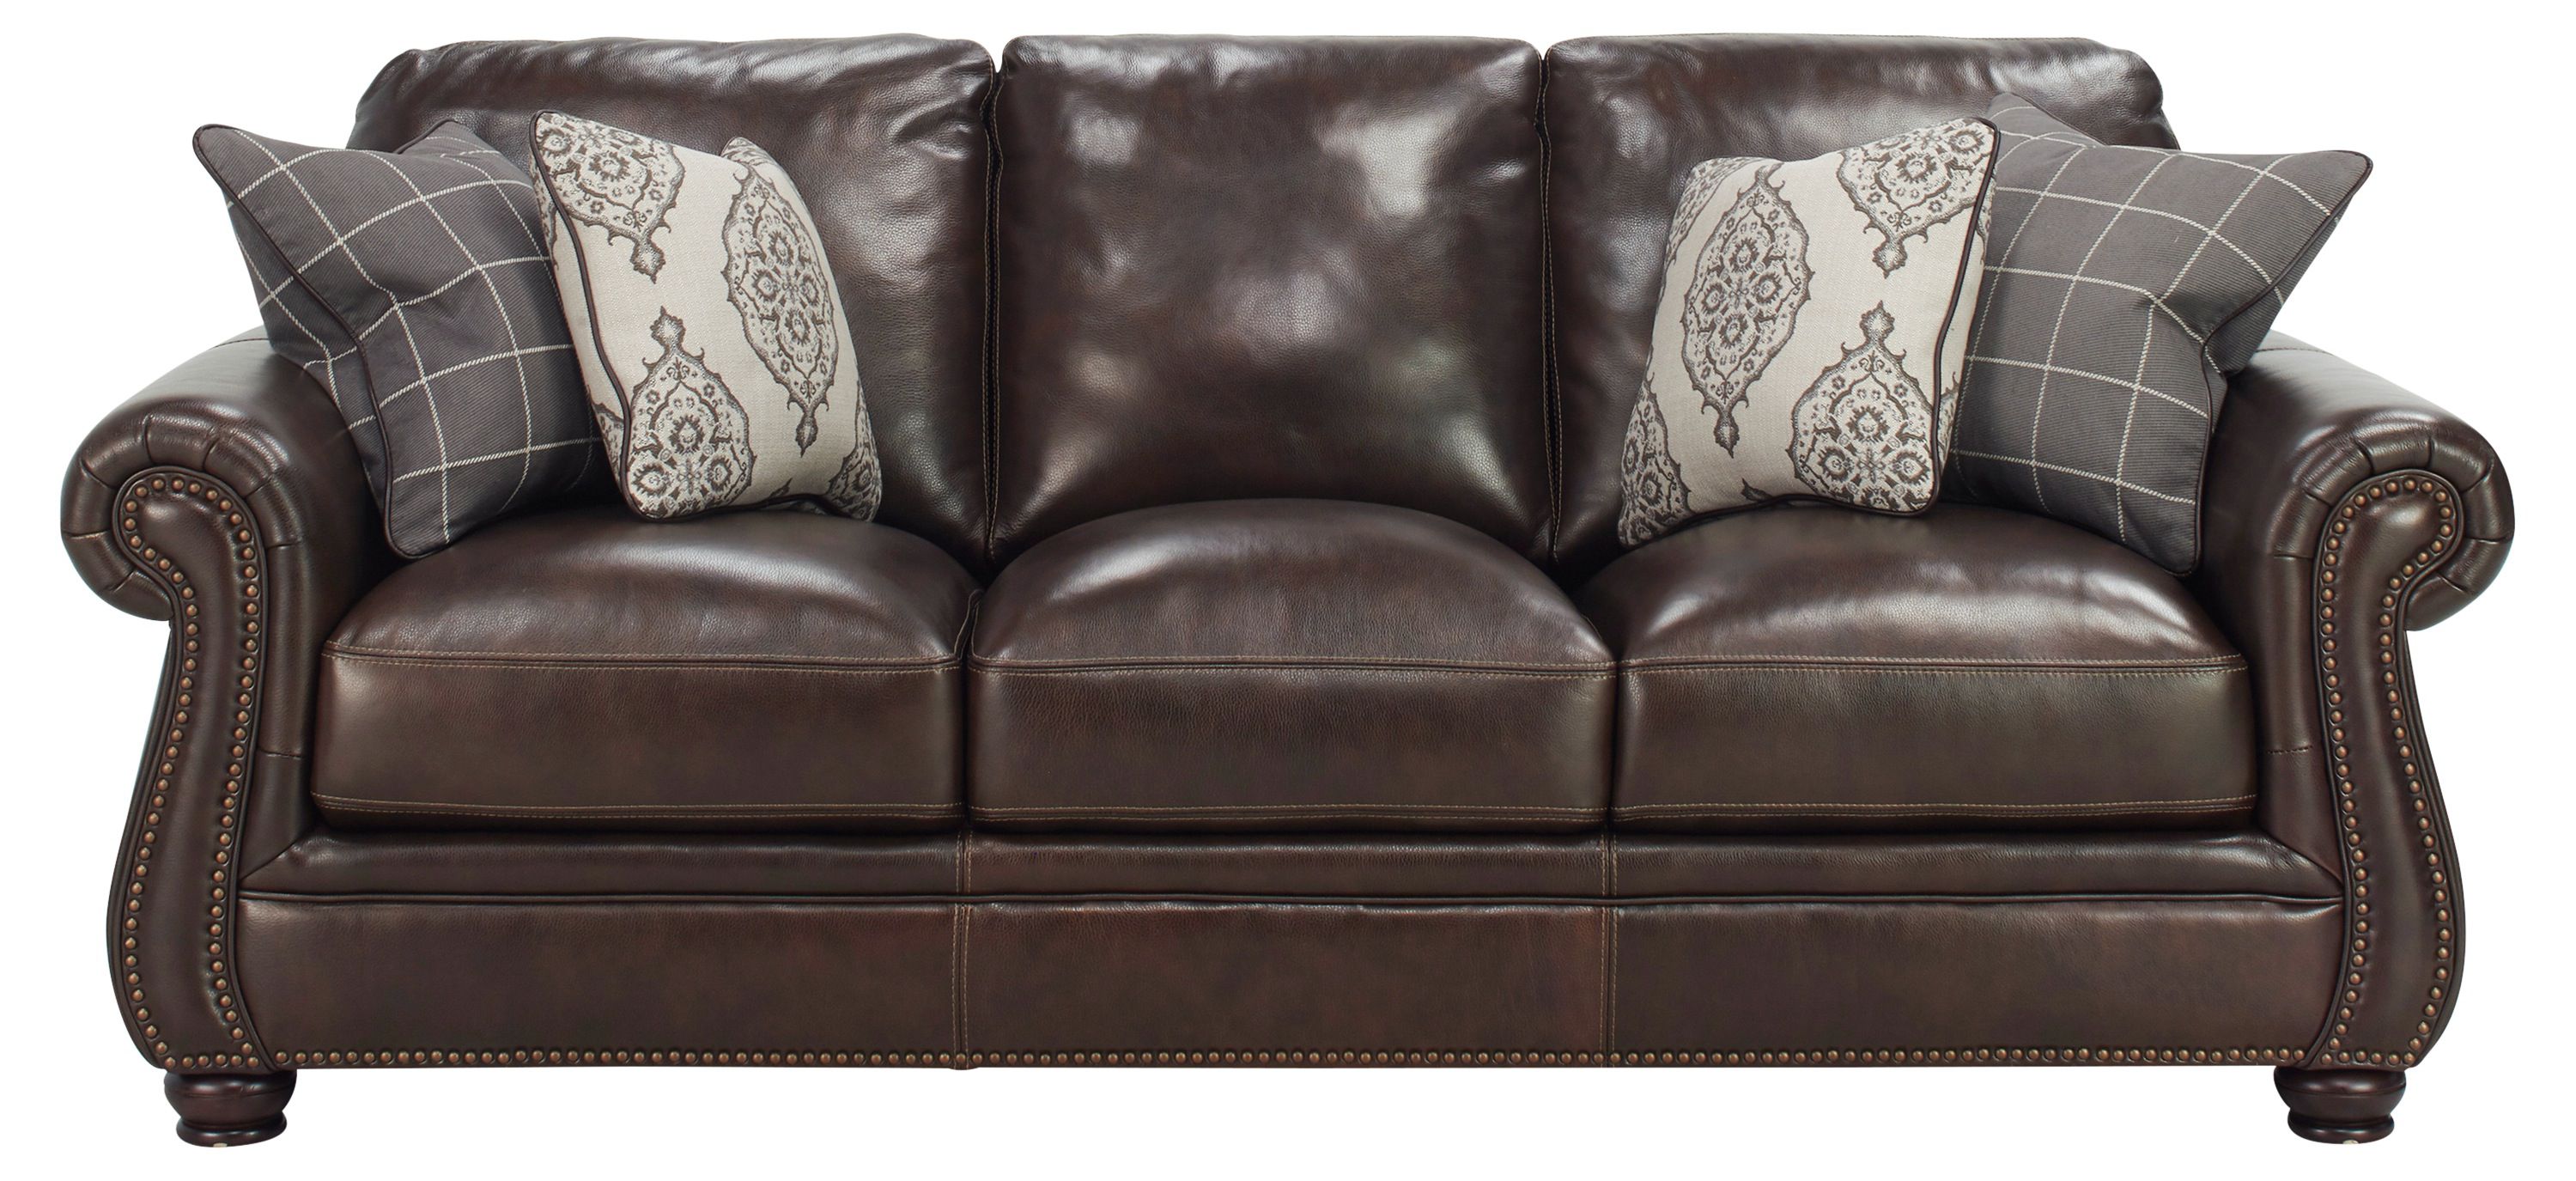 Alistair Leather Sofa